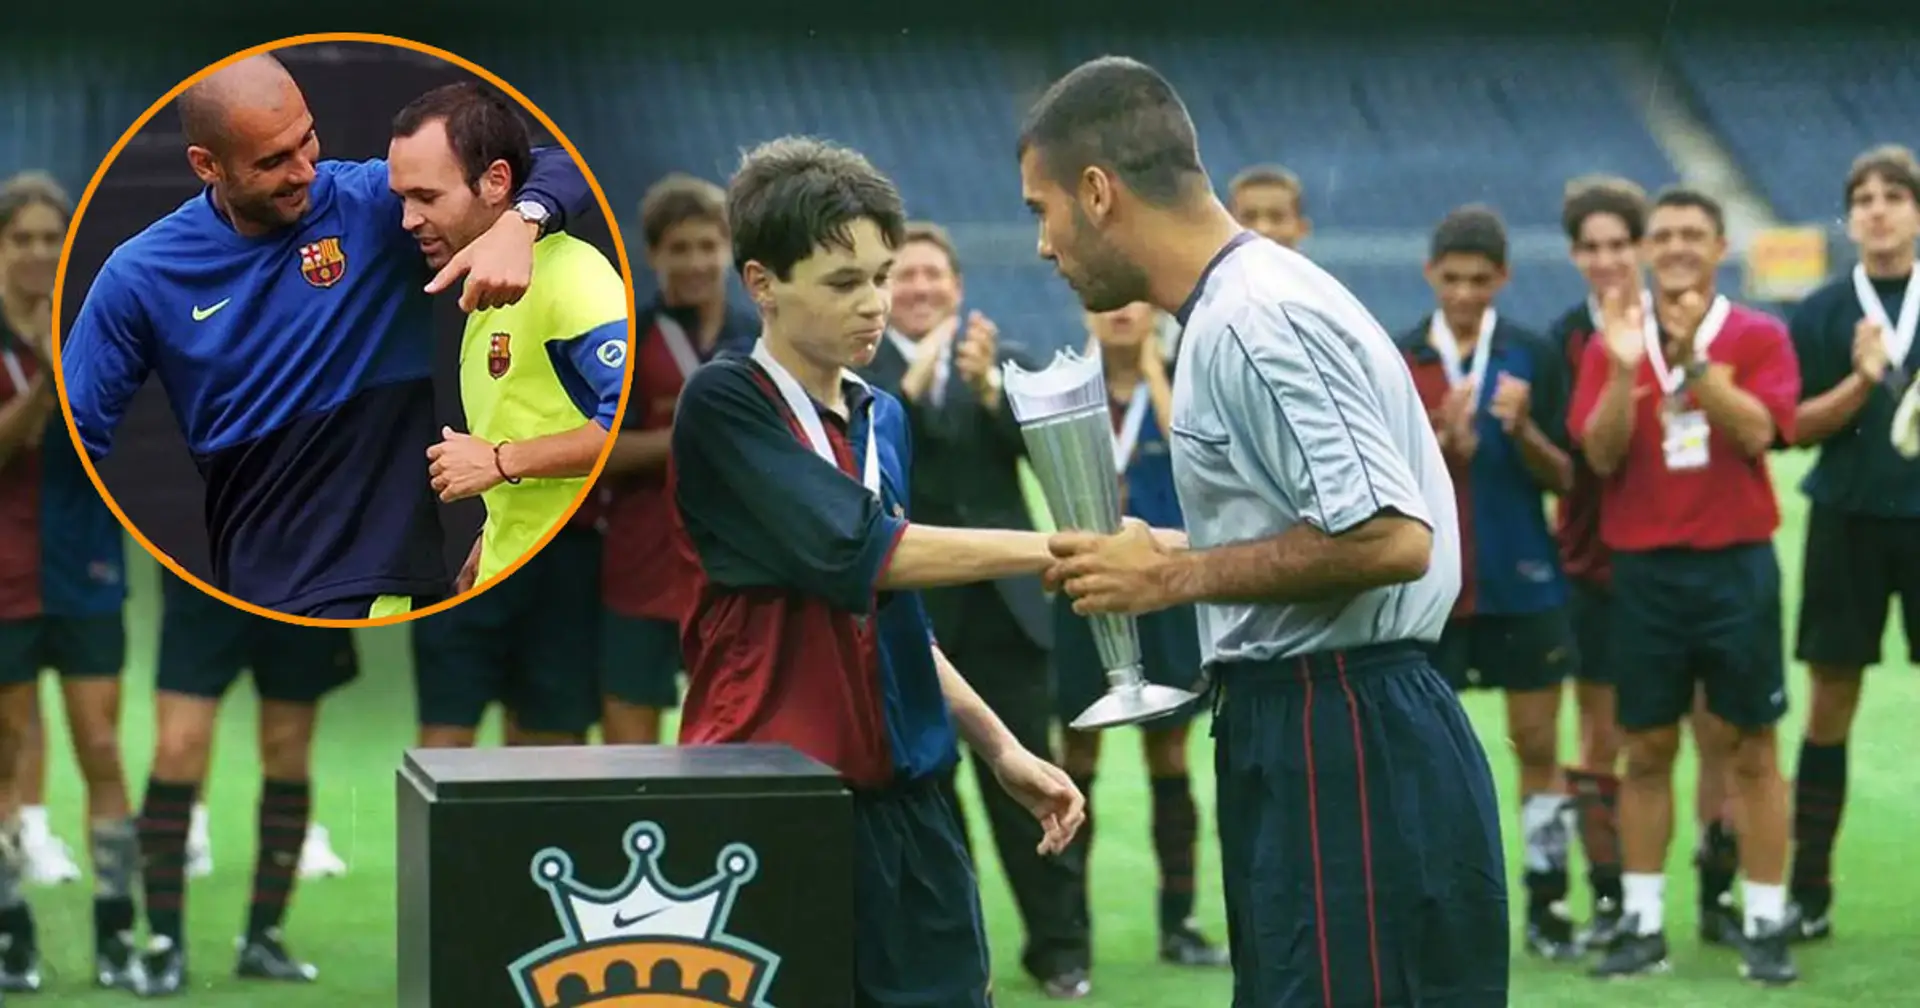 "Il nous mettra tous les deux à la retraite !" : l'histoire vraie derrière la photo emblématique de Pep Guardiola avec Iniesta à l'adolescence